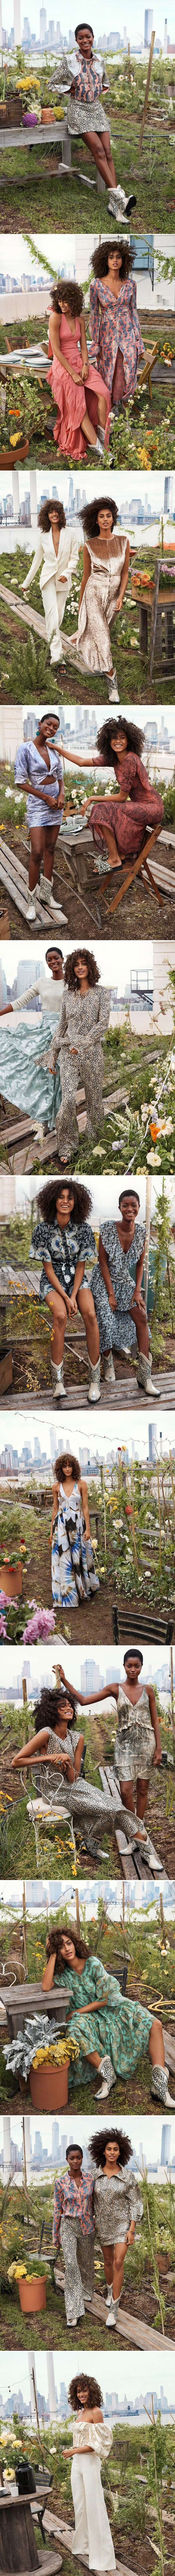 H & M lança coleção de moda sustentável com folhas de abacaxi, cascas de laranja e algas stylo urbano